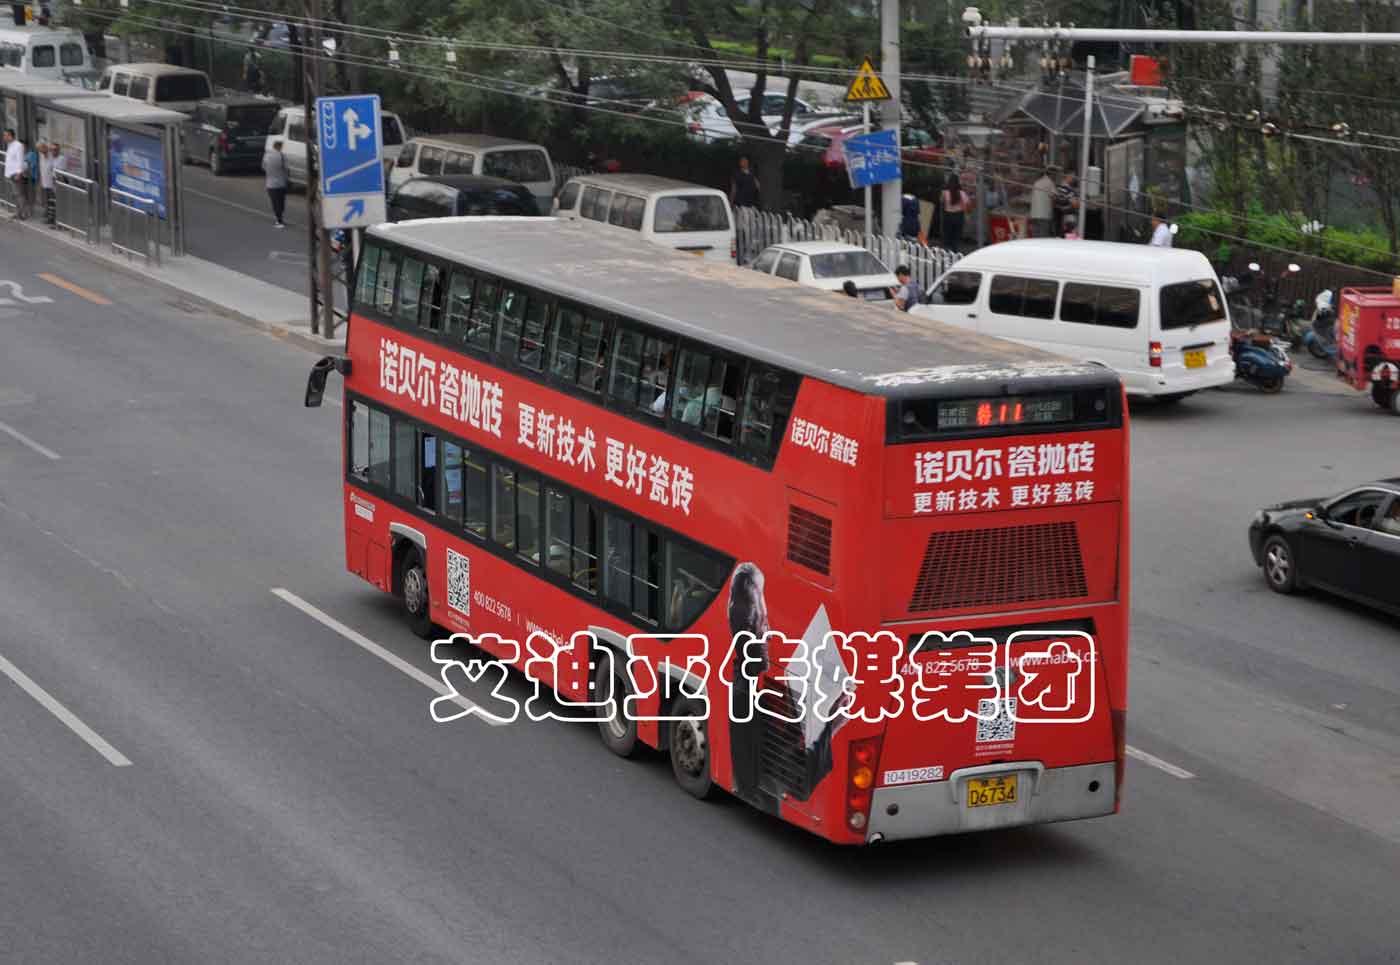 公交车广告案例图片-pp电子